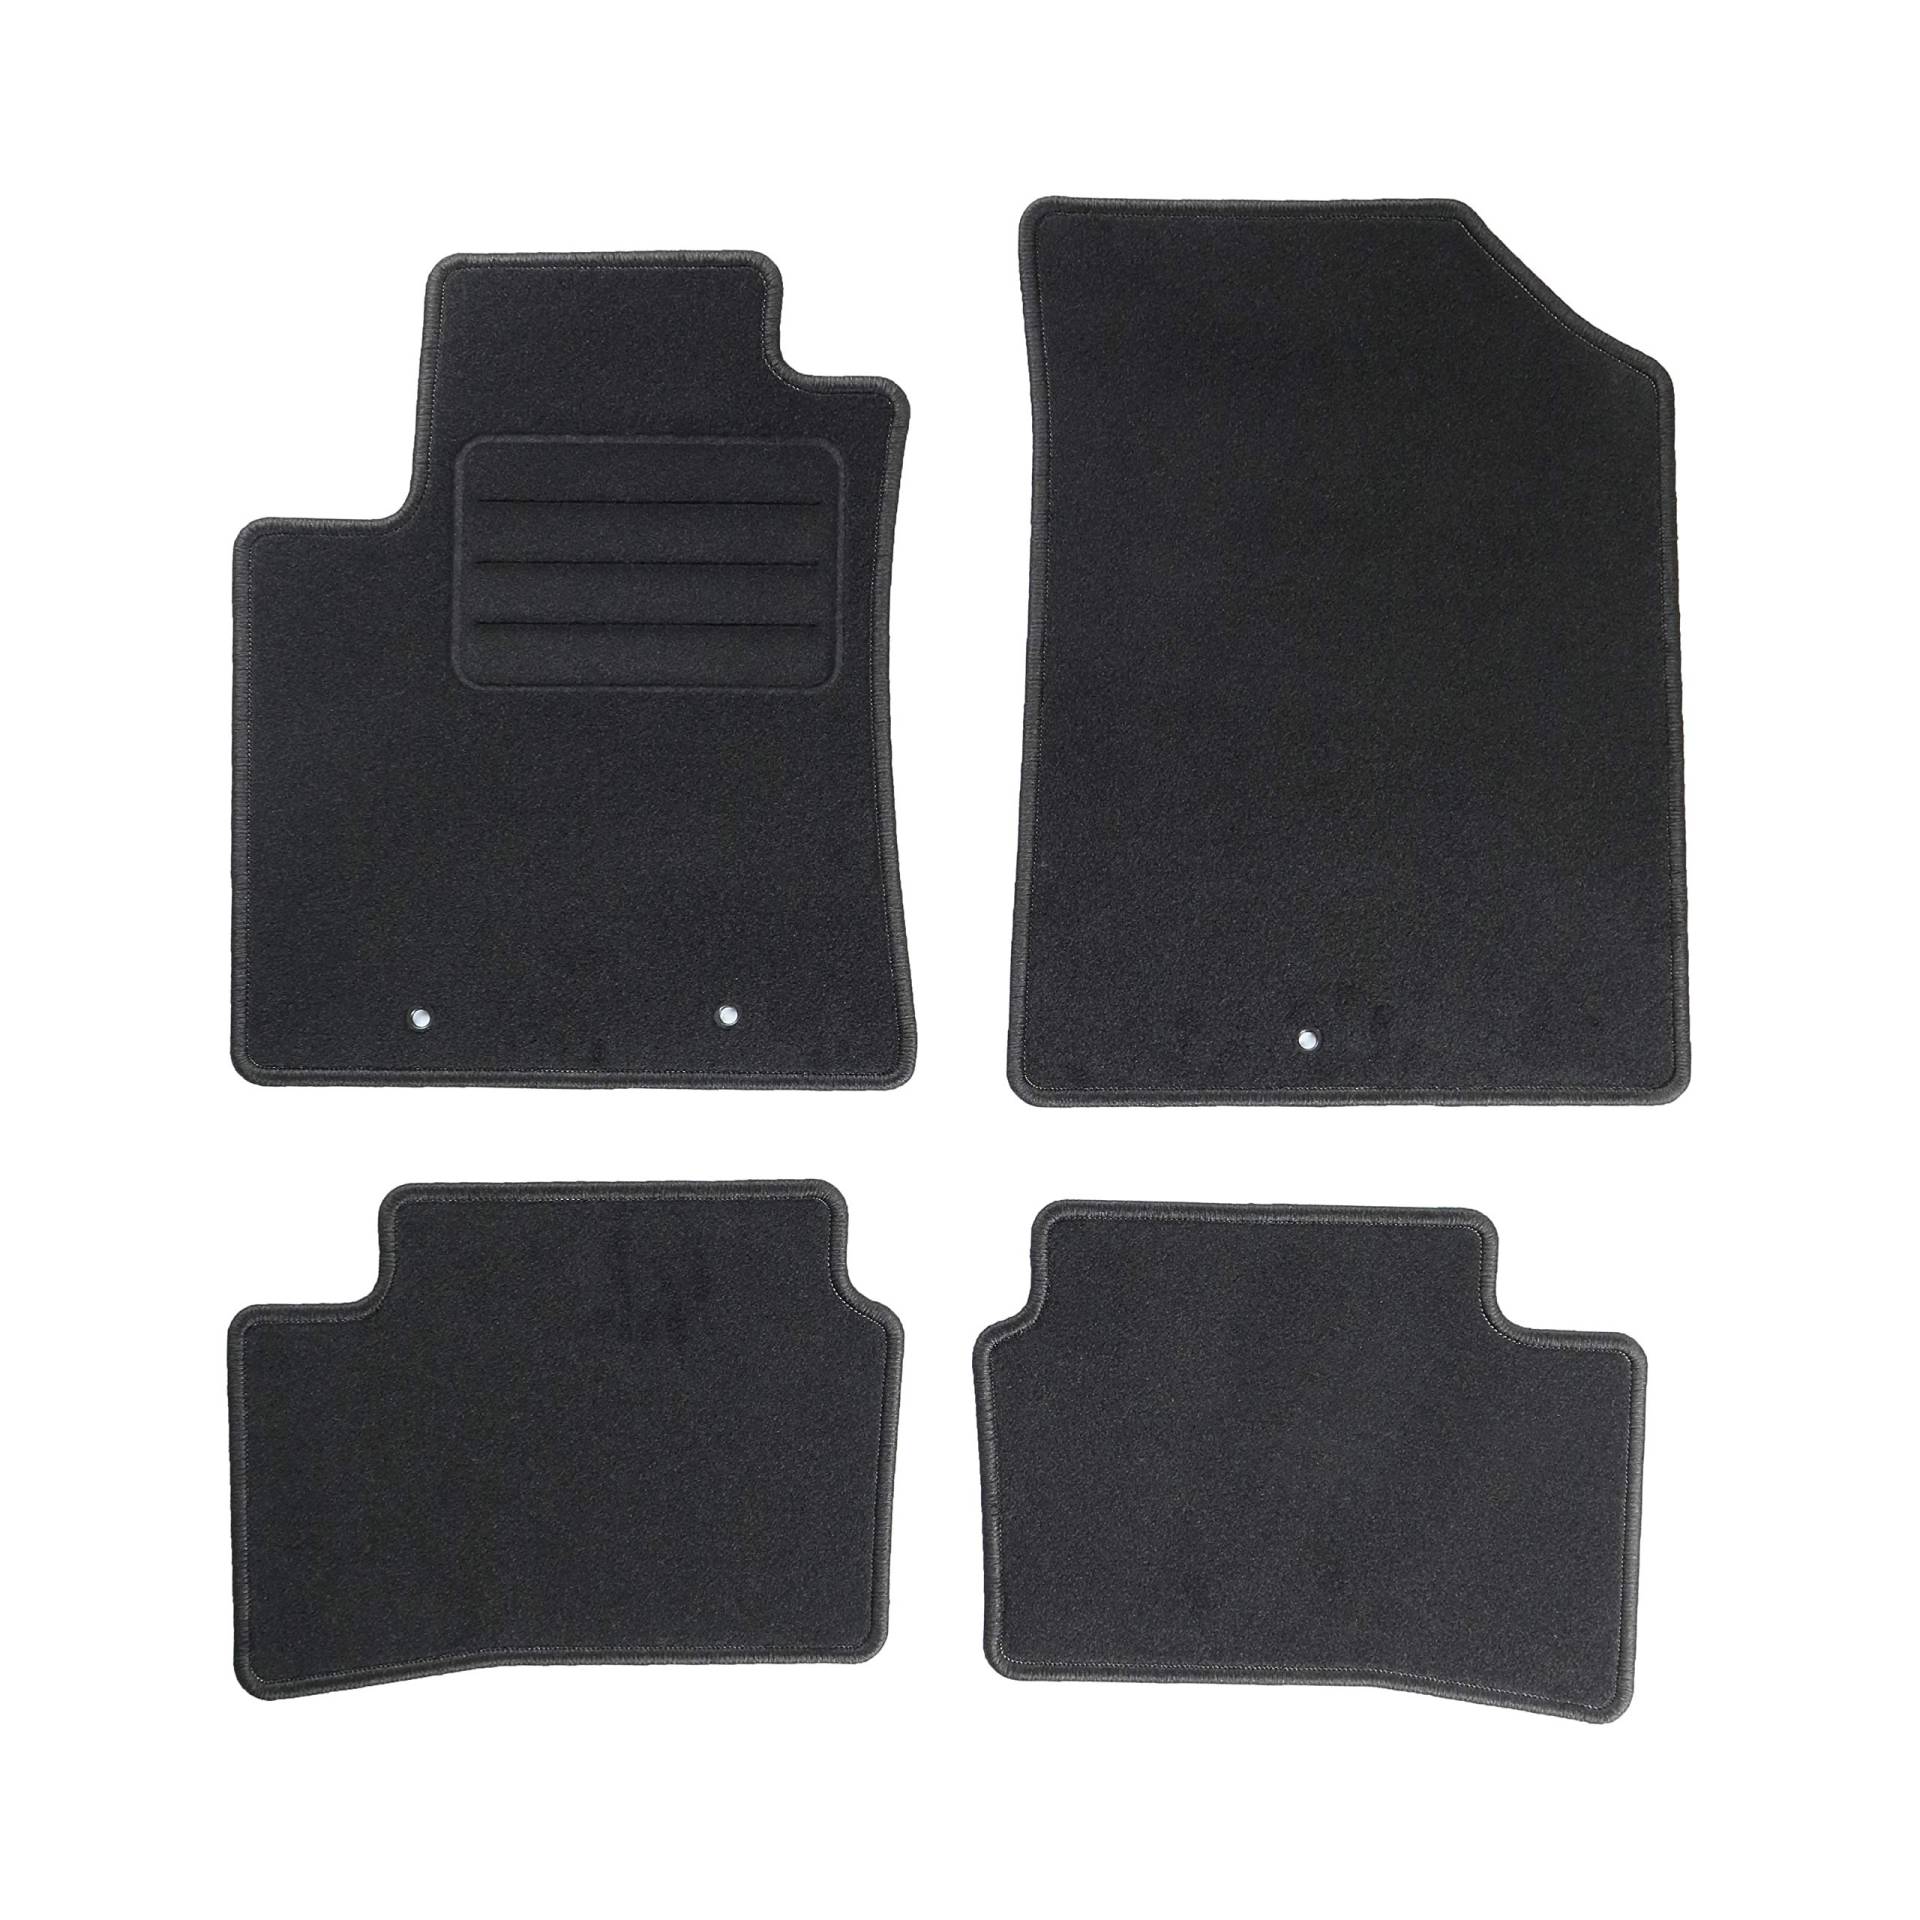 TEXER Textil Fußmatten Passend für Hyundai i10 II Bj. 2013- Basic von Car Mat Co